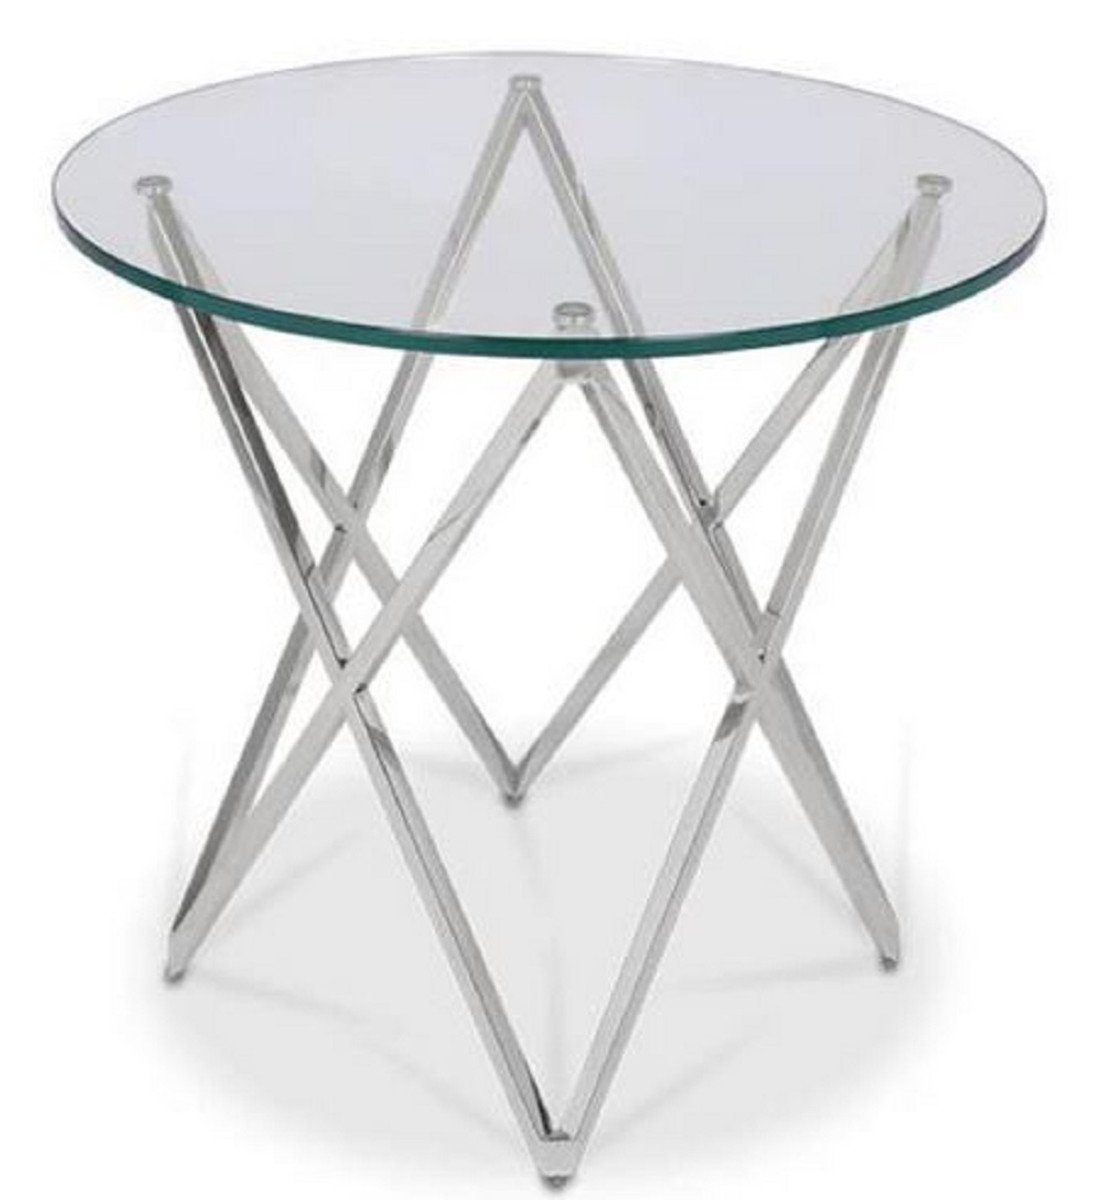 Casa Padrino Beistelltisch Luxus Beistelltisch Silber Ø 60 x H. 55 cm - Runder Edelstahl Tisch mit Glasplatte - Luxus Möbel